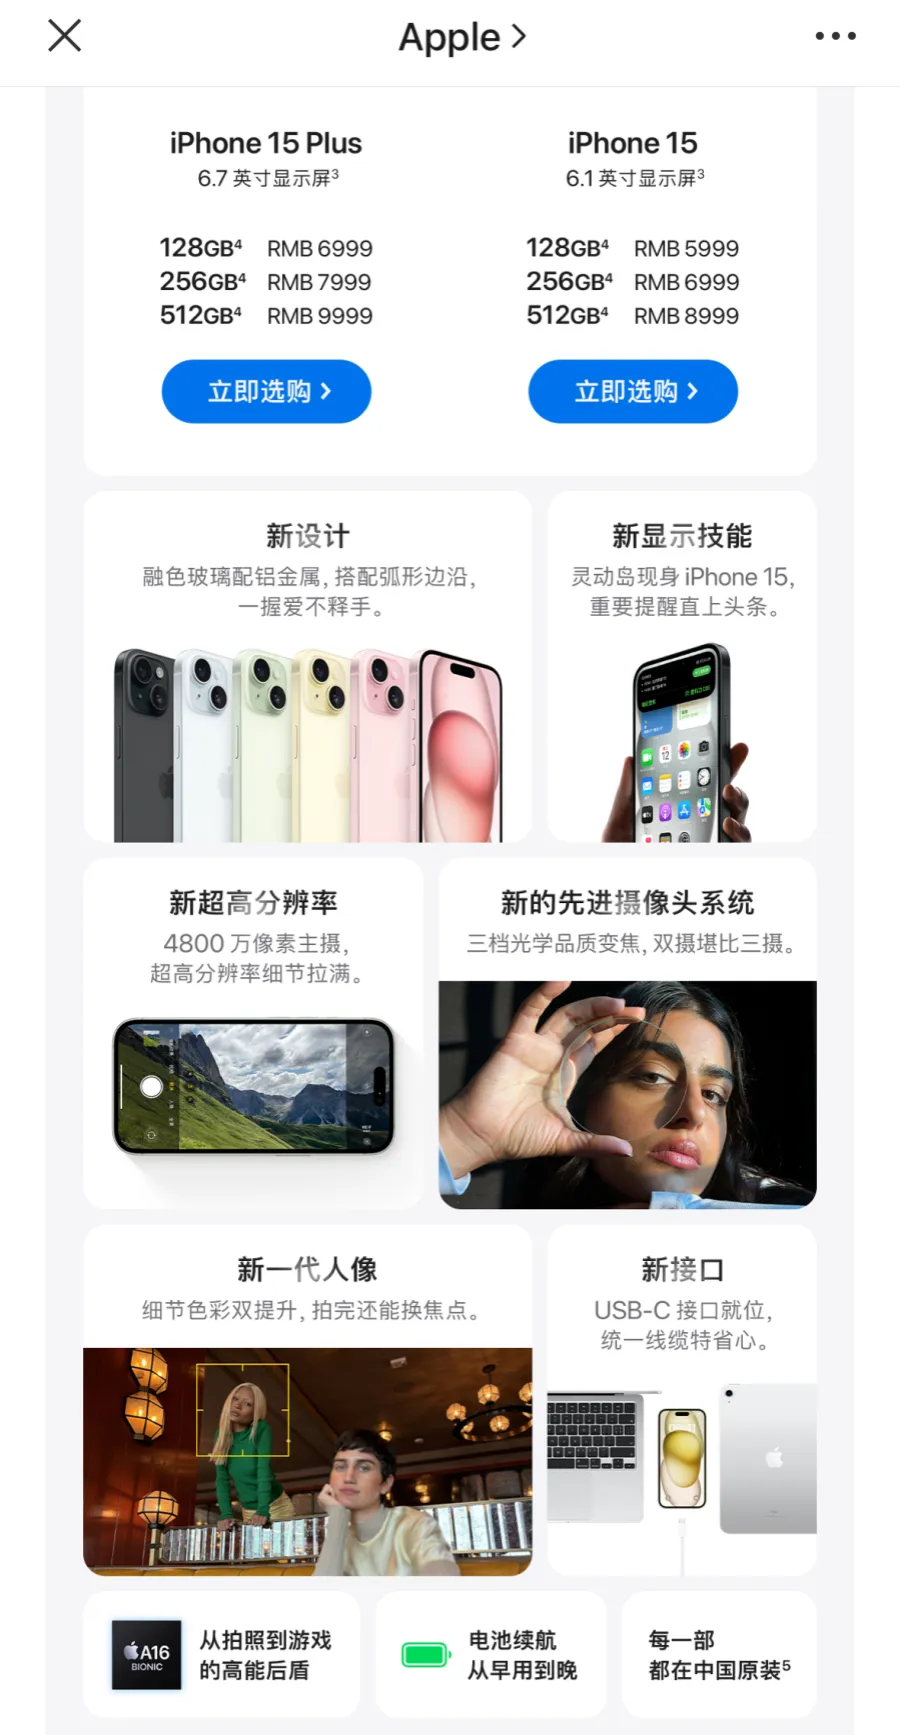 苹果官方证实在中国大陆销售的合法认证的iPhone 15系列产品均为中国组装